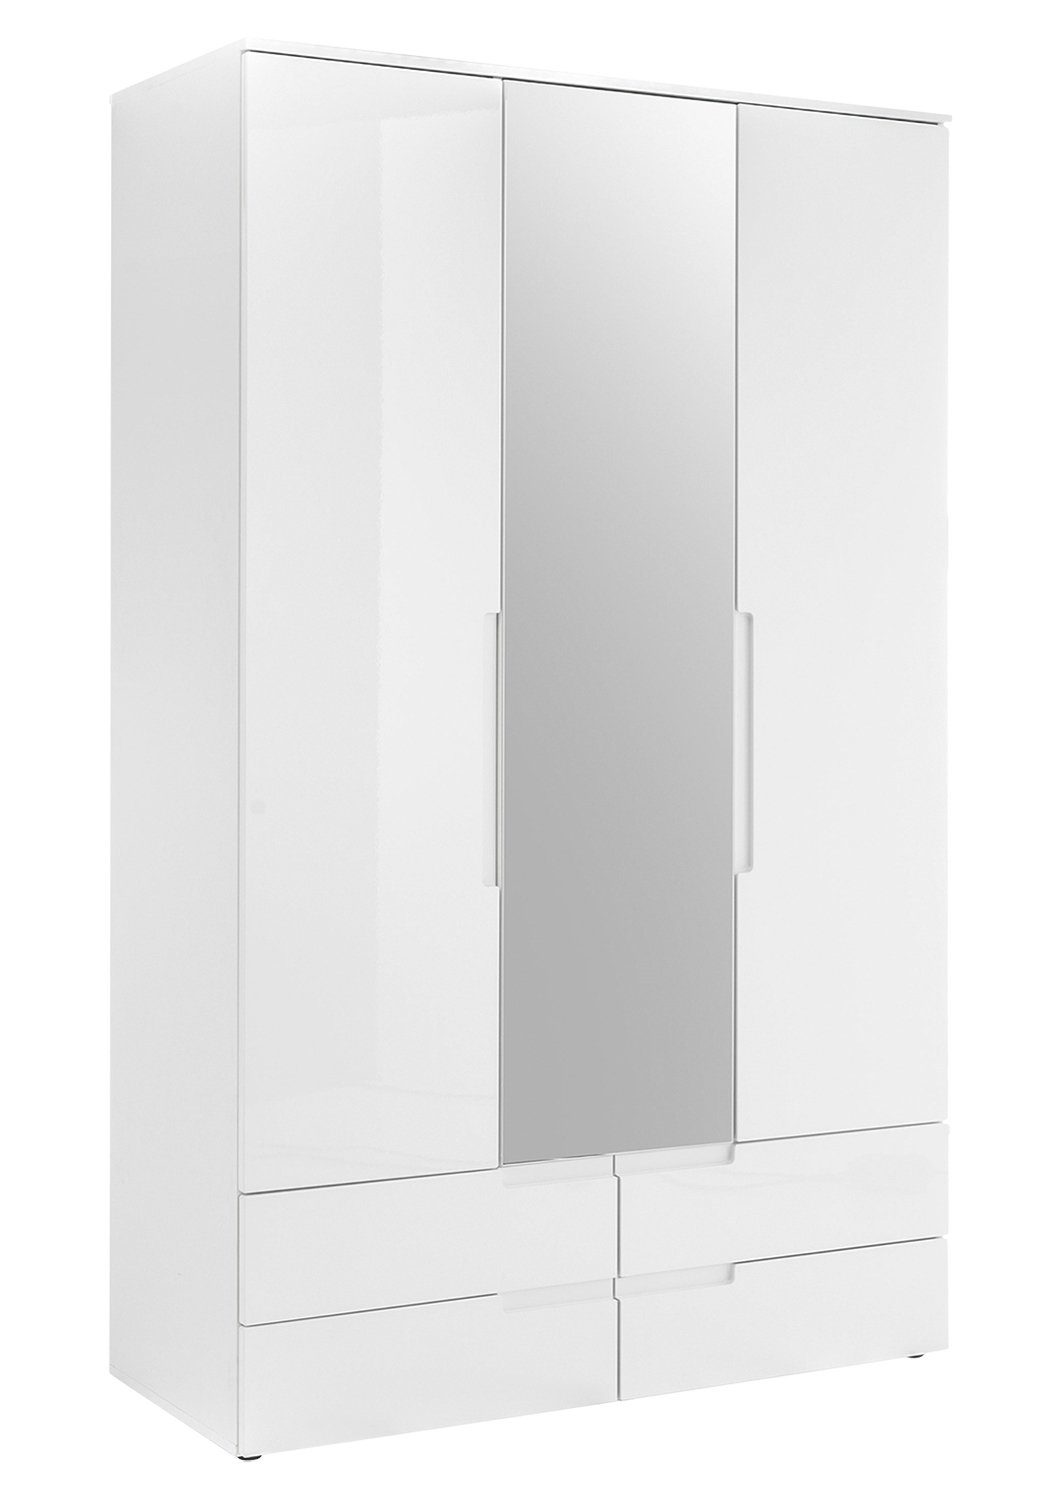 Pol-Power Drehtürenschrank Kleiderschrank SPICE, B 126 cm x H 208 cm, Weiß Hochglanz, 3 Türen, 4 Schubladen, mit Spiegel